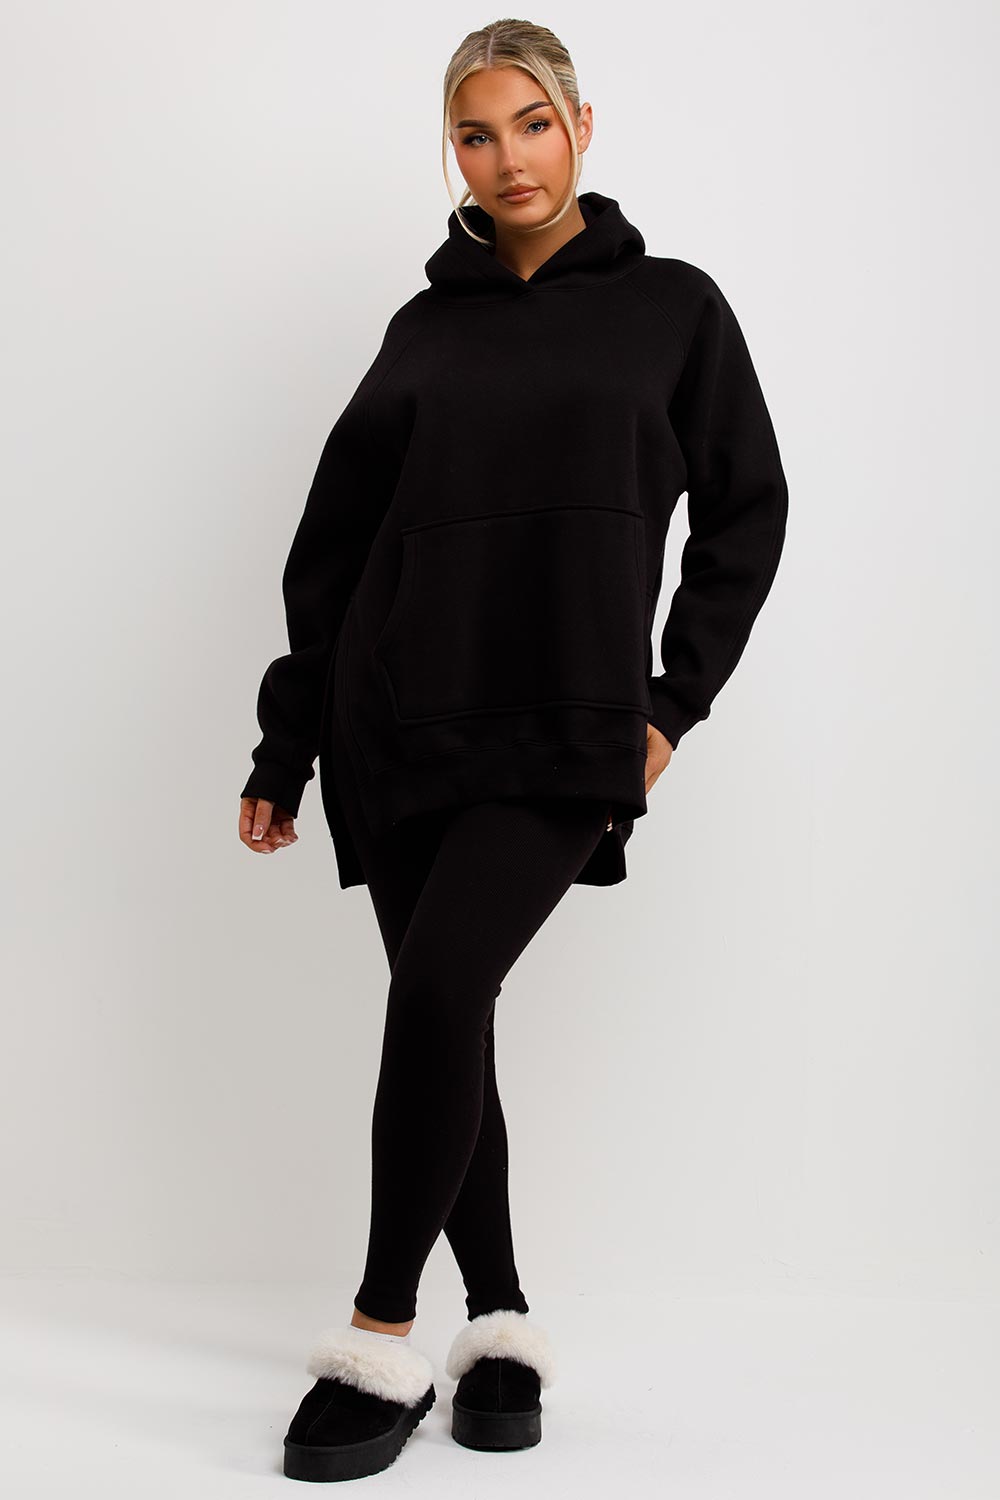 Women's Hoodie And Leggings Set Black Loungewear –